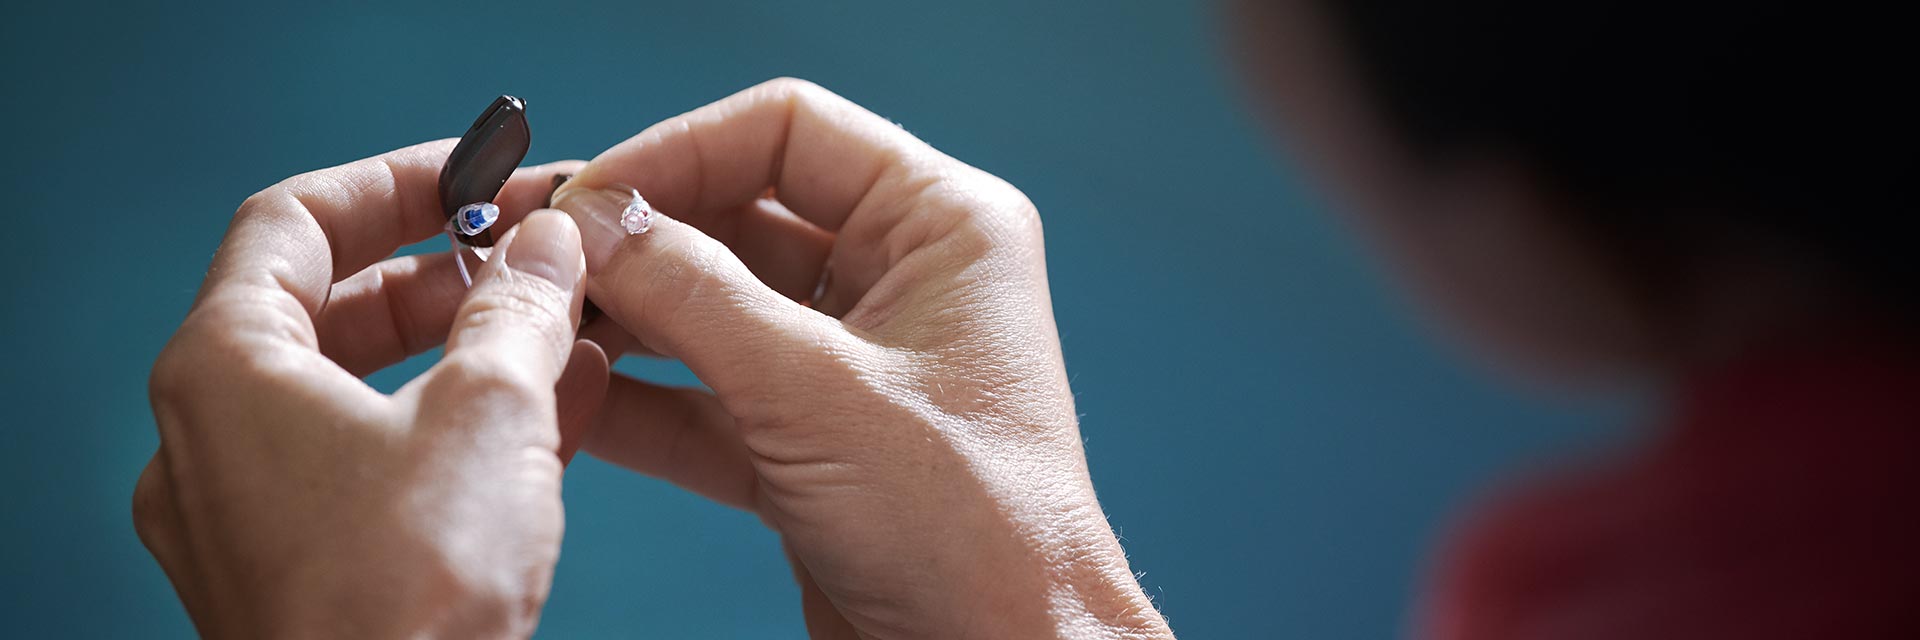 Afbeelding van twee handen die gehoorapparaatbatterijen uitwisselen